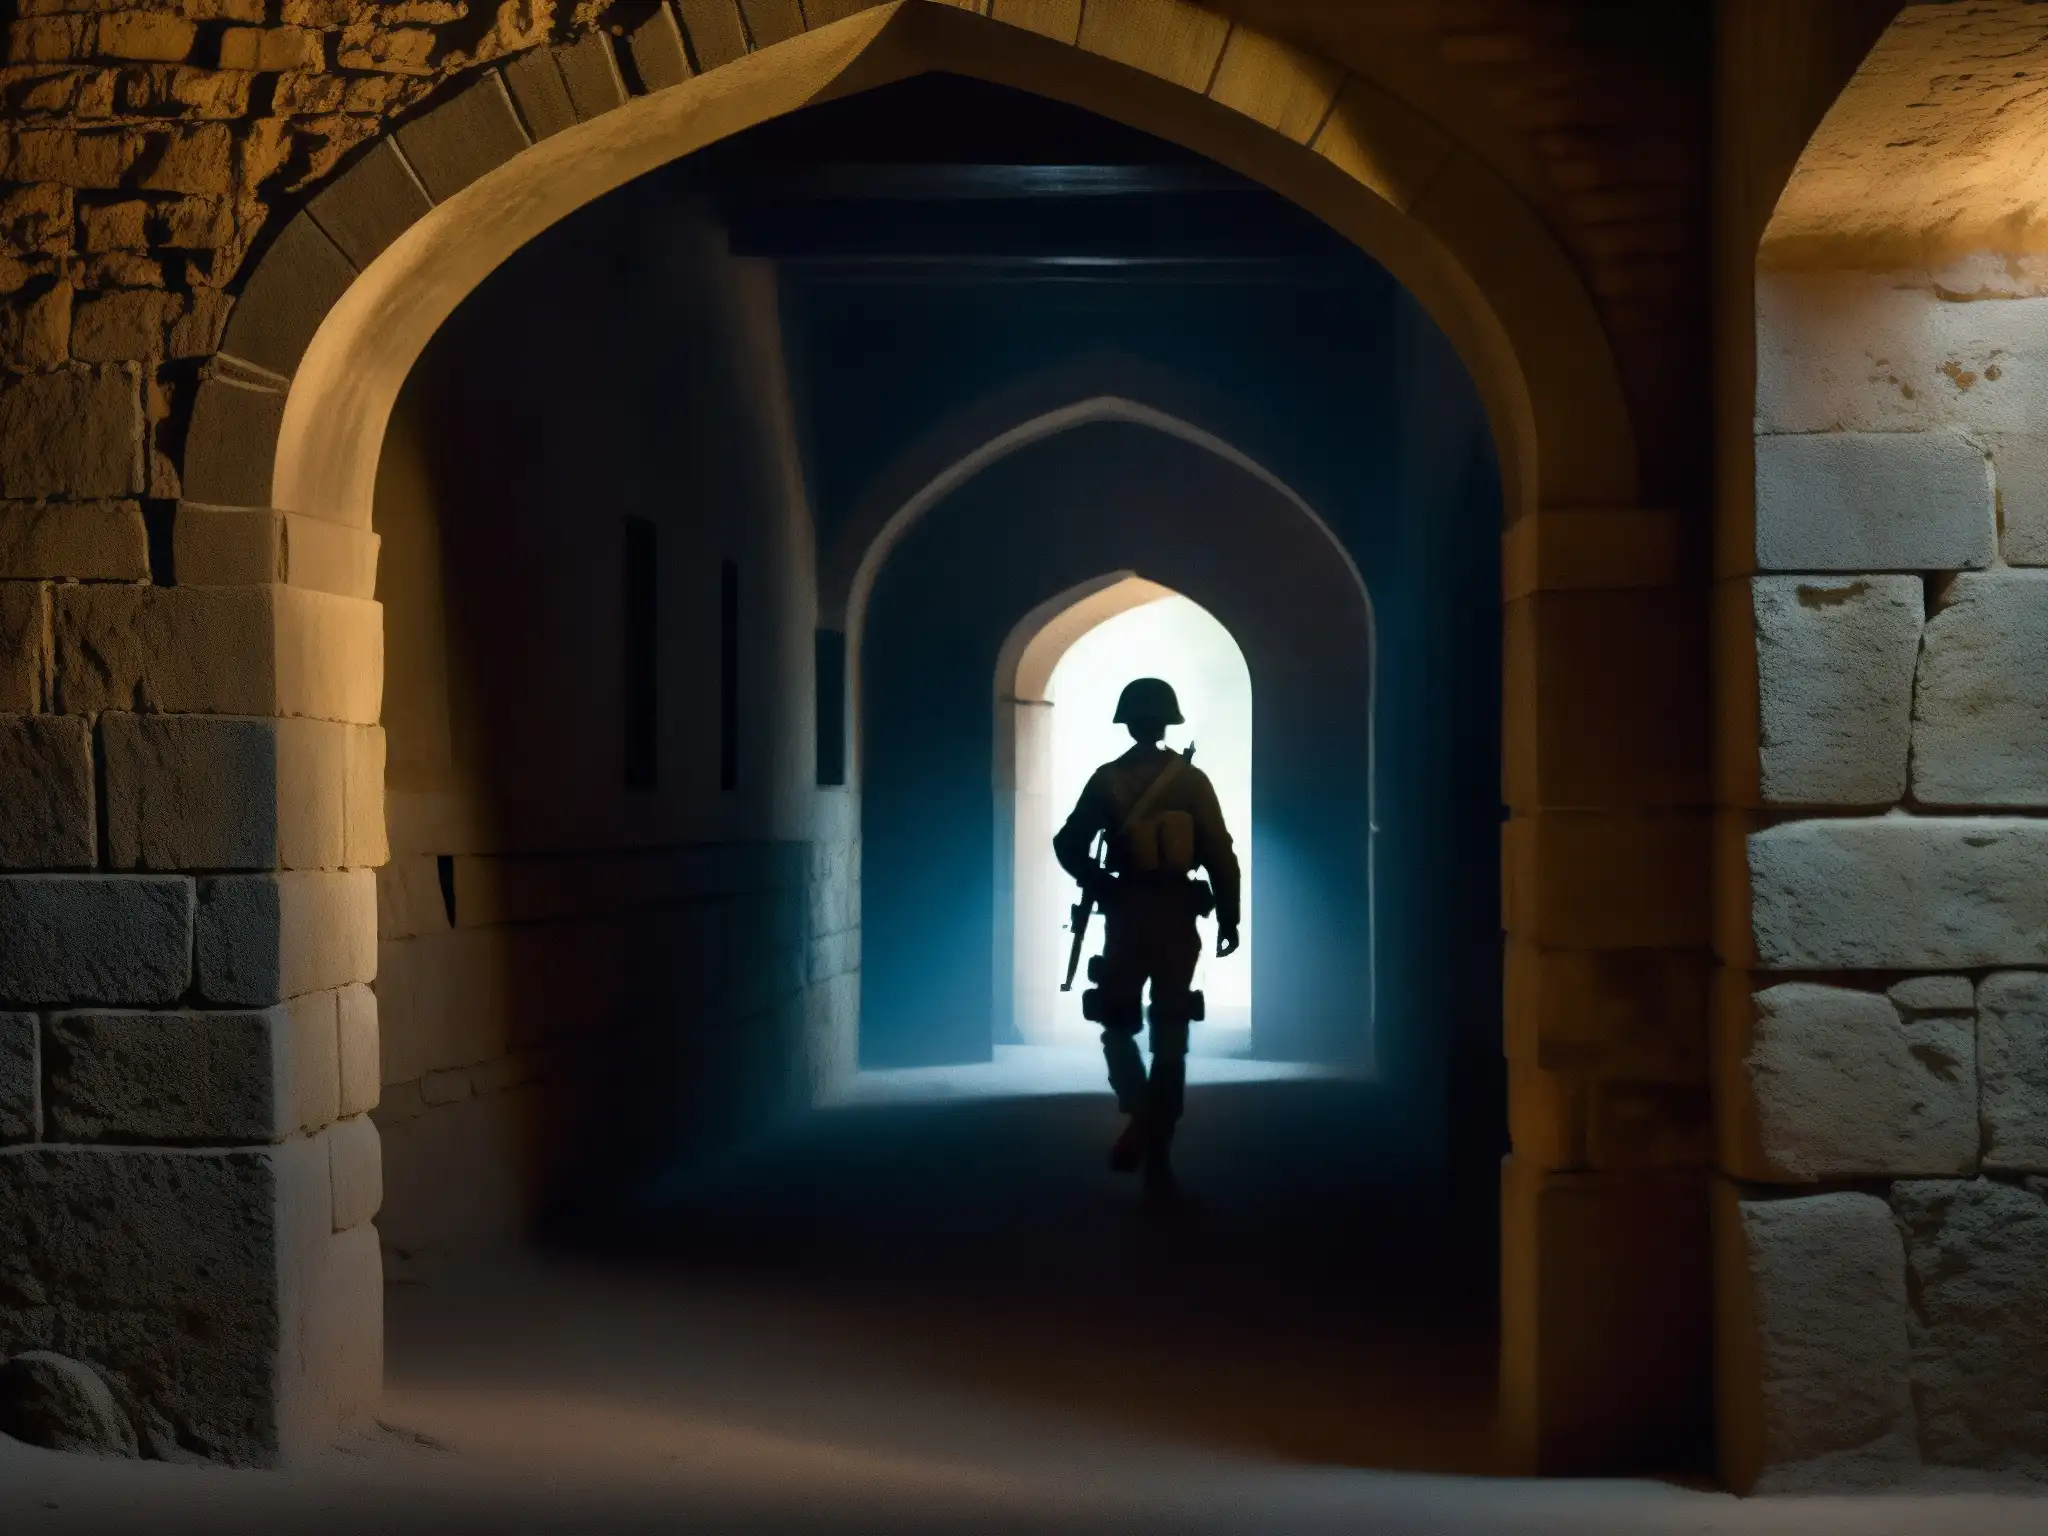 Explora la misteriosa atmósfera del Fuerte de Meerut con la silueta del soldado del pasado, evocando 'El Espíritu del Soldado Fuerte Meerut'